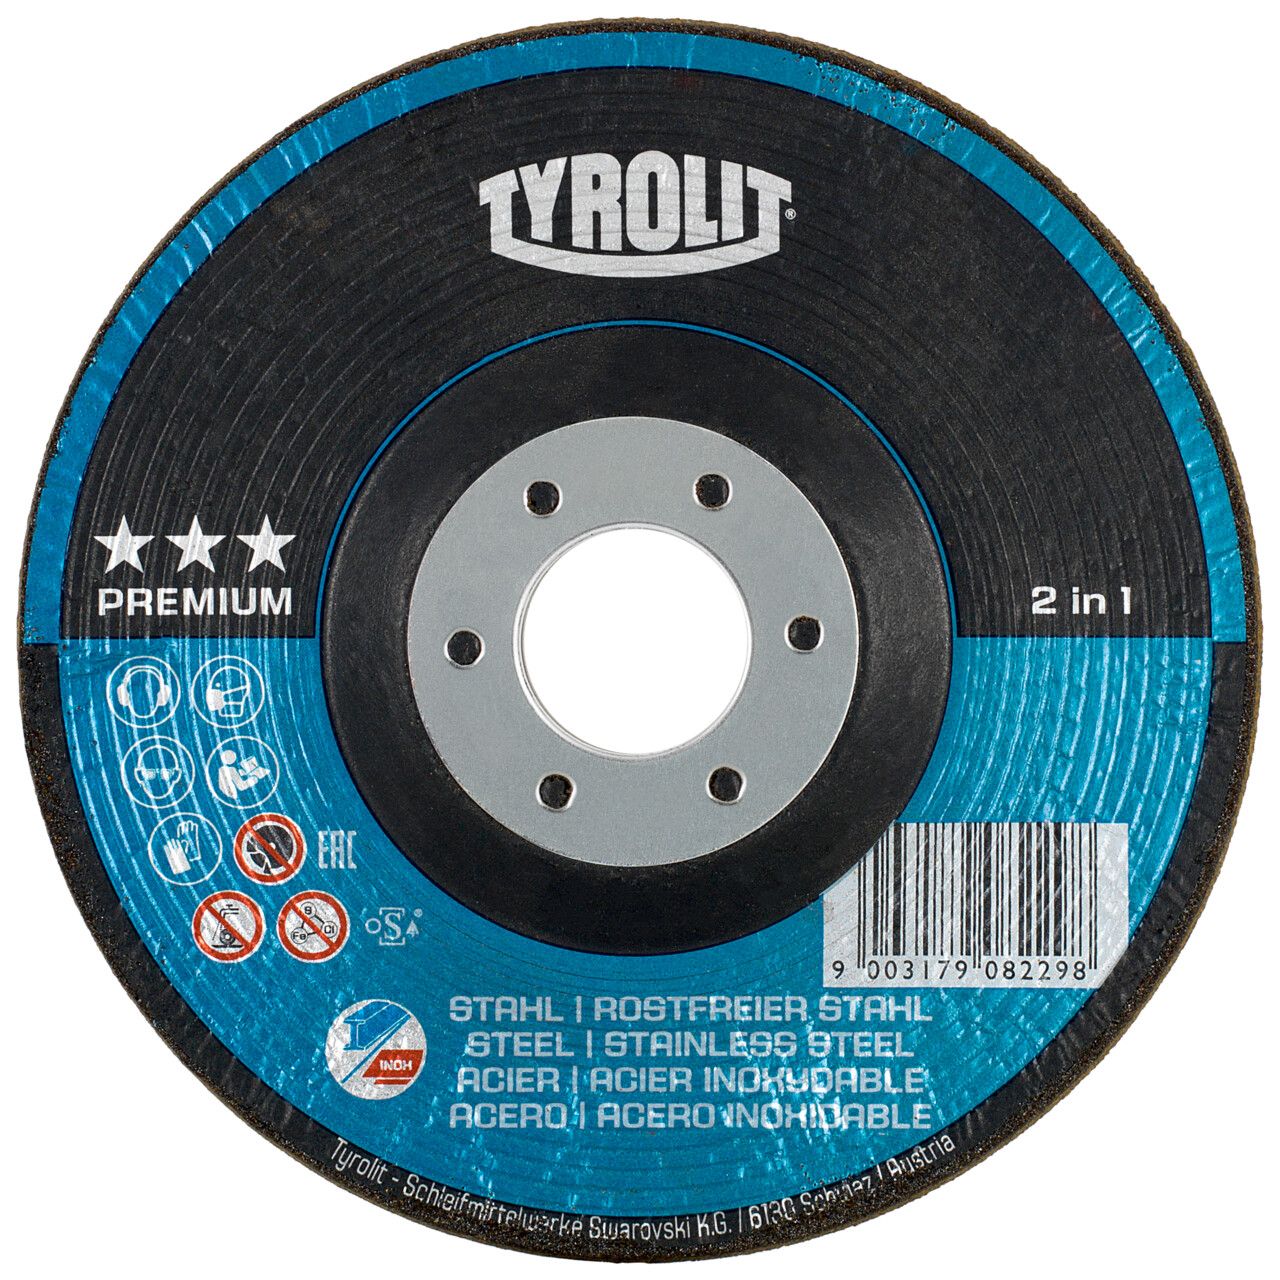 Tyrolit 2in1 RONDELLER® para acero y acero inoxidable 115 #29RON 115x22,23 A60Q-BF